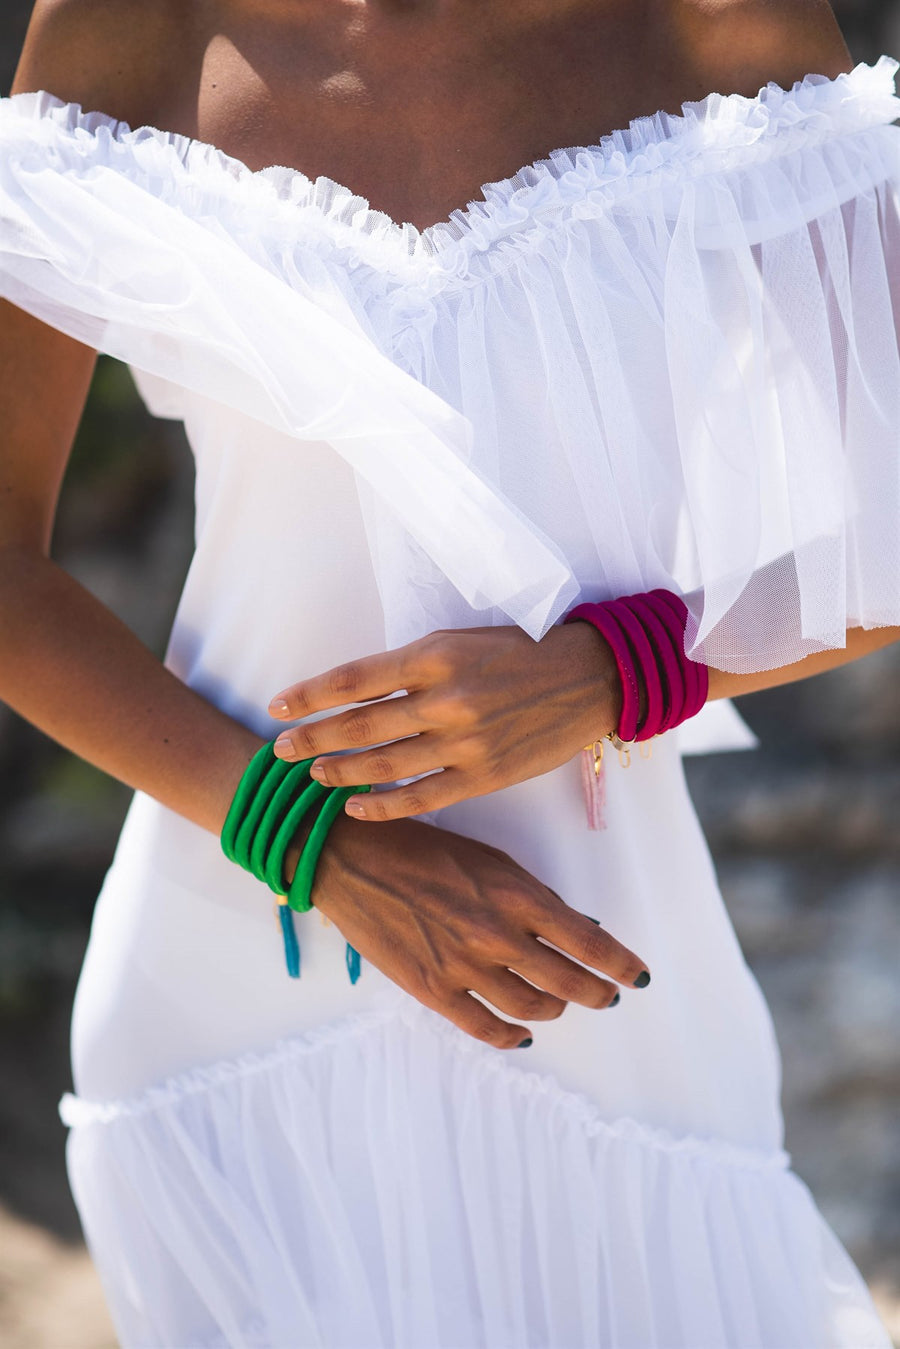 African Tribe Bracelet Sets